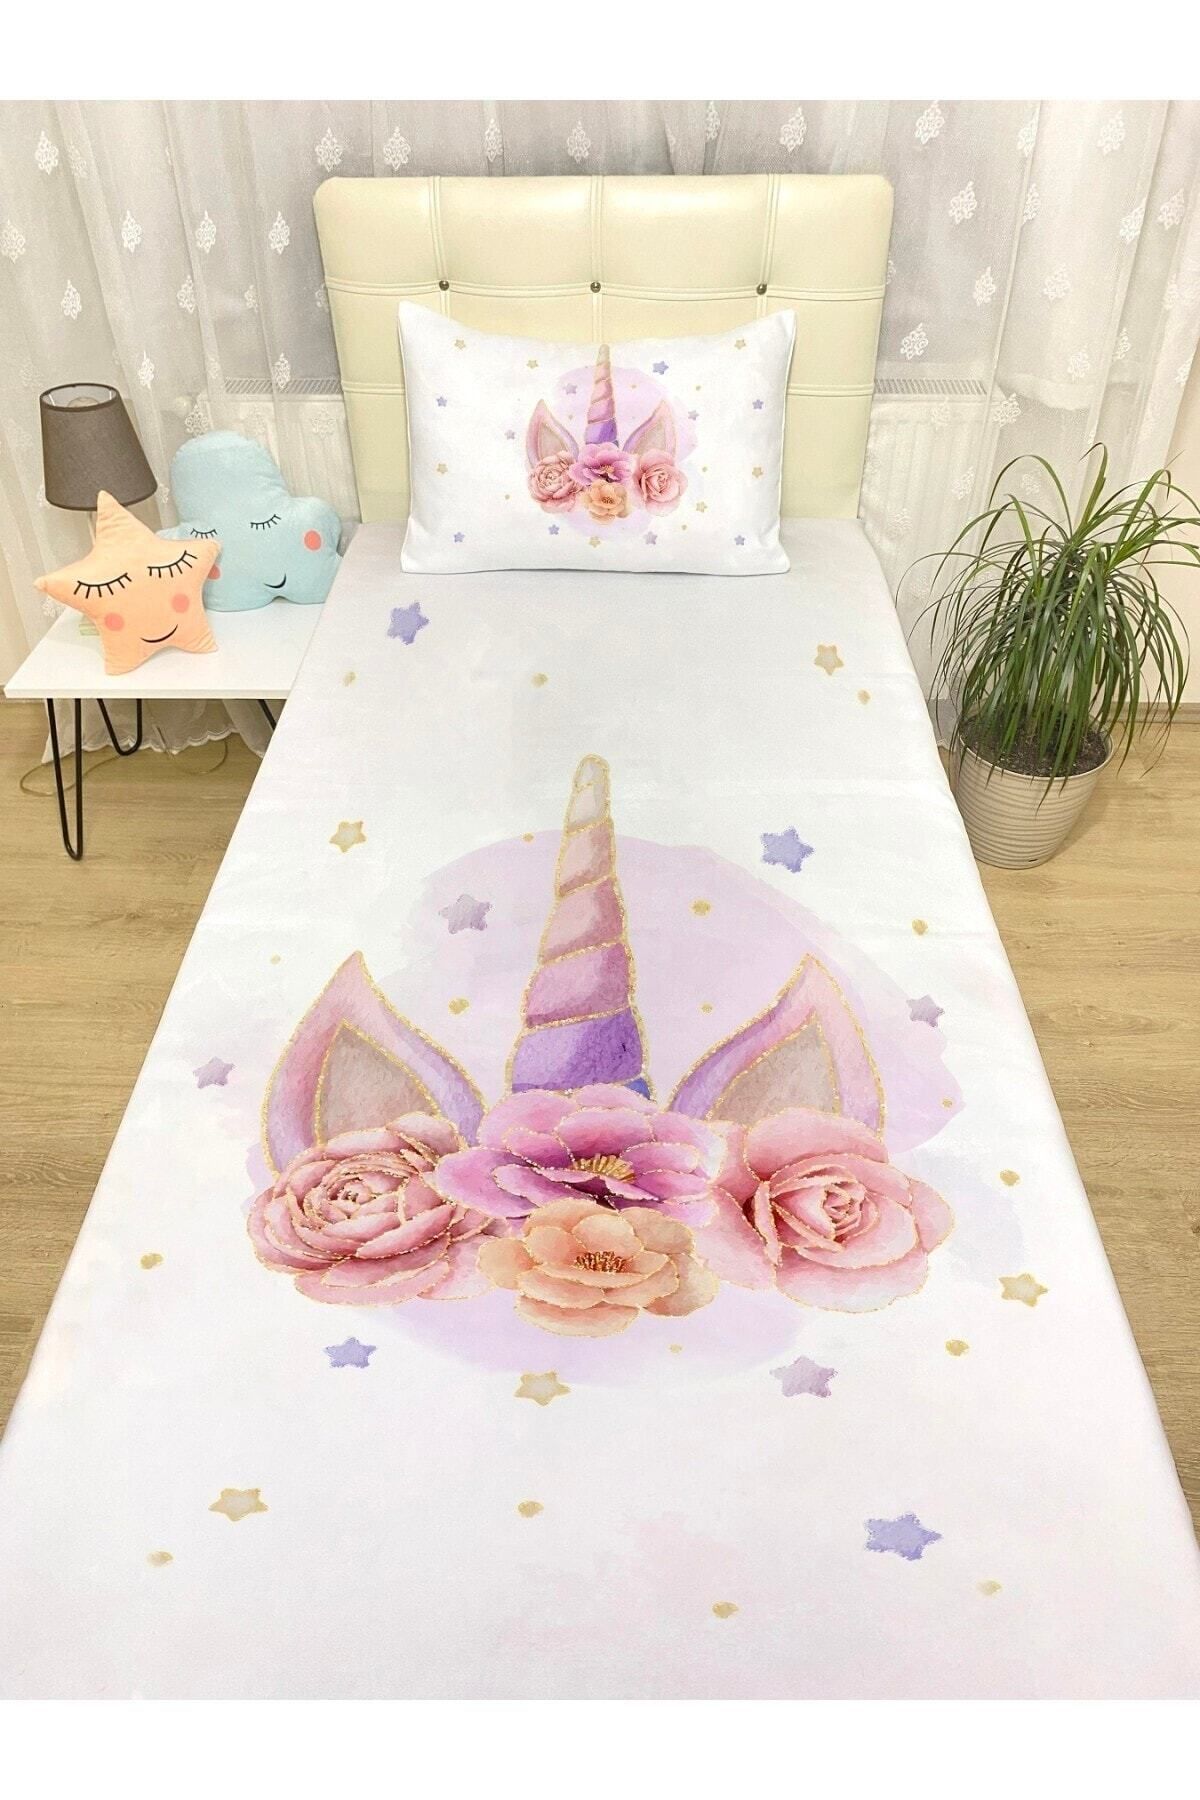 Rual Bebek& Çocuk OdasıAltın Güller Unicorn Taçı Desenli Yatak Örtüsü Ve Yastık Kılıfı